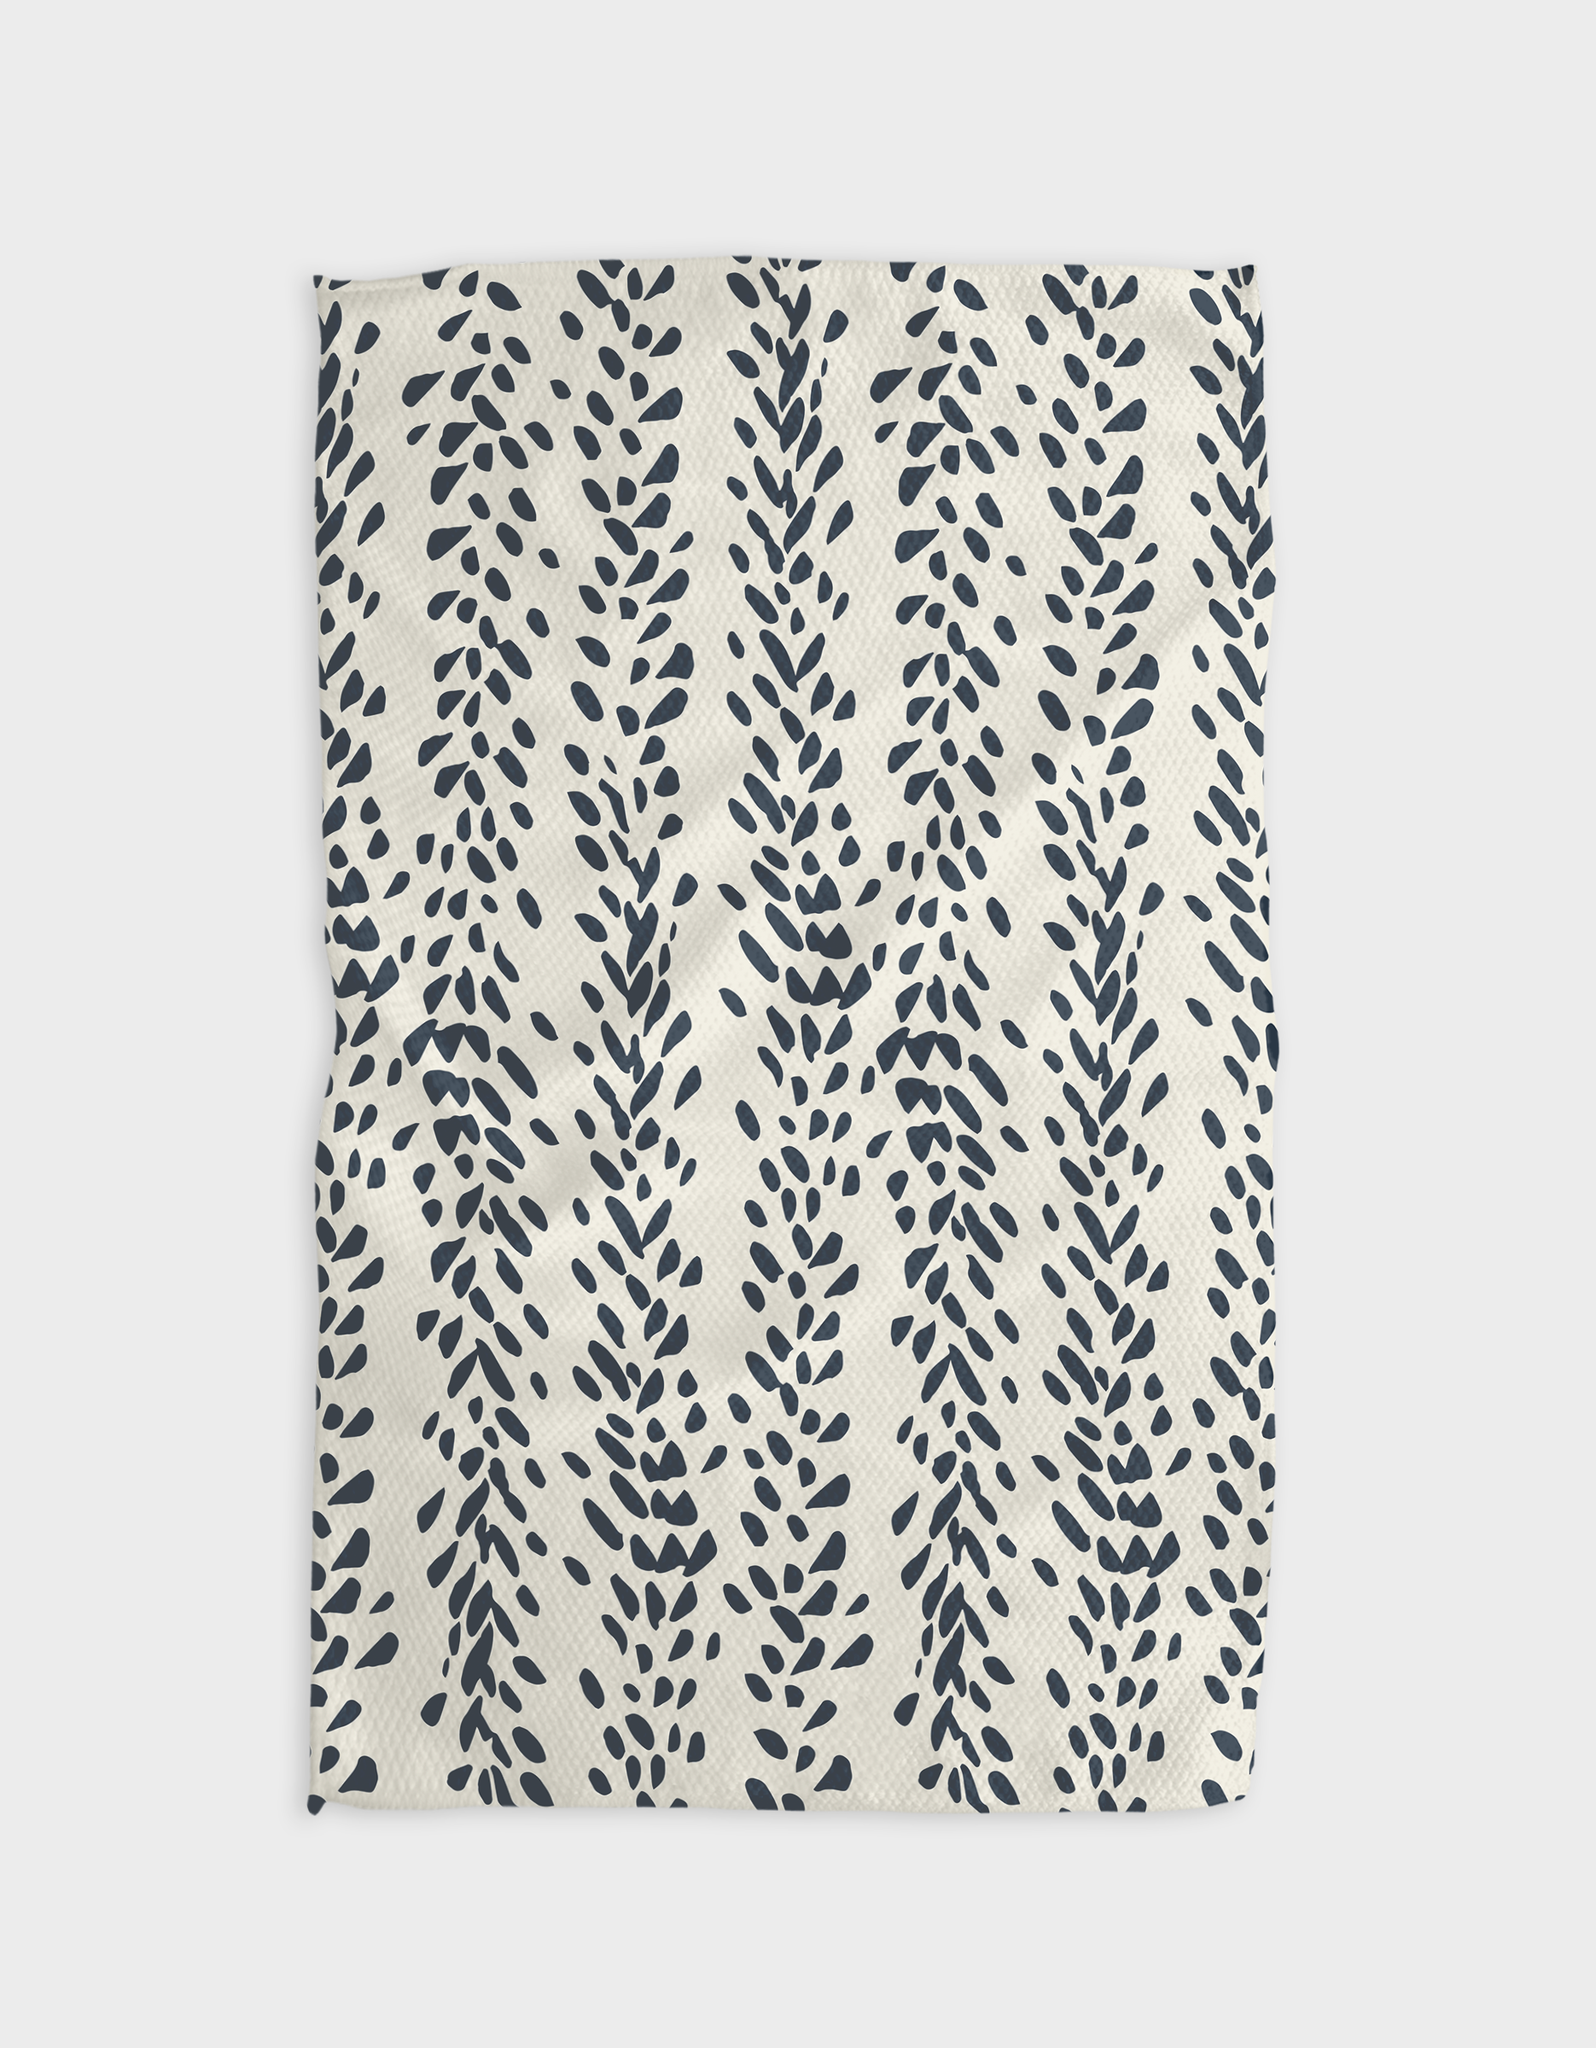 Reeds Printed - Midnight Tea Towel